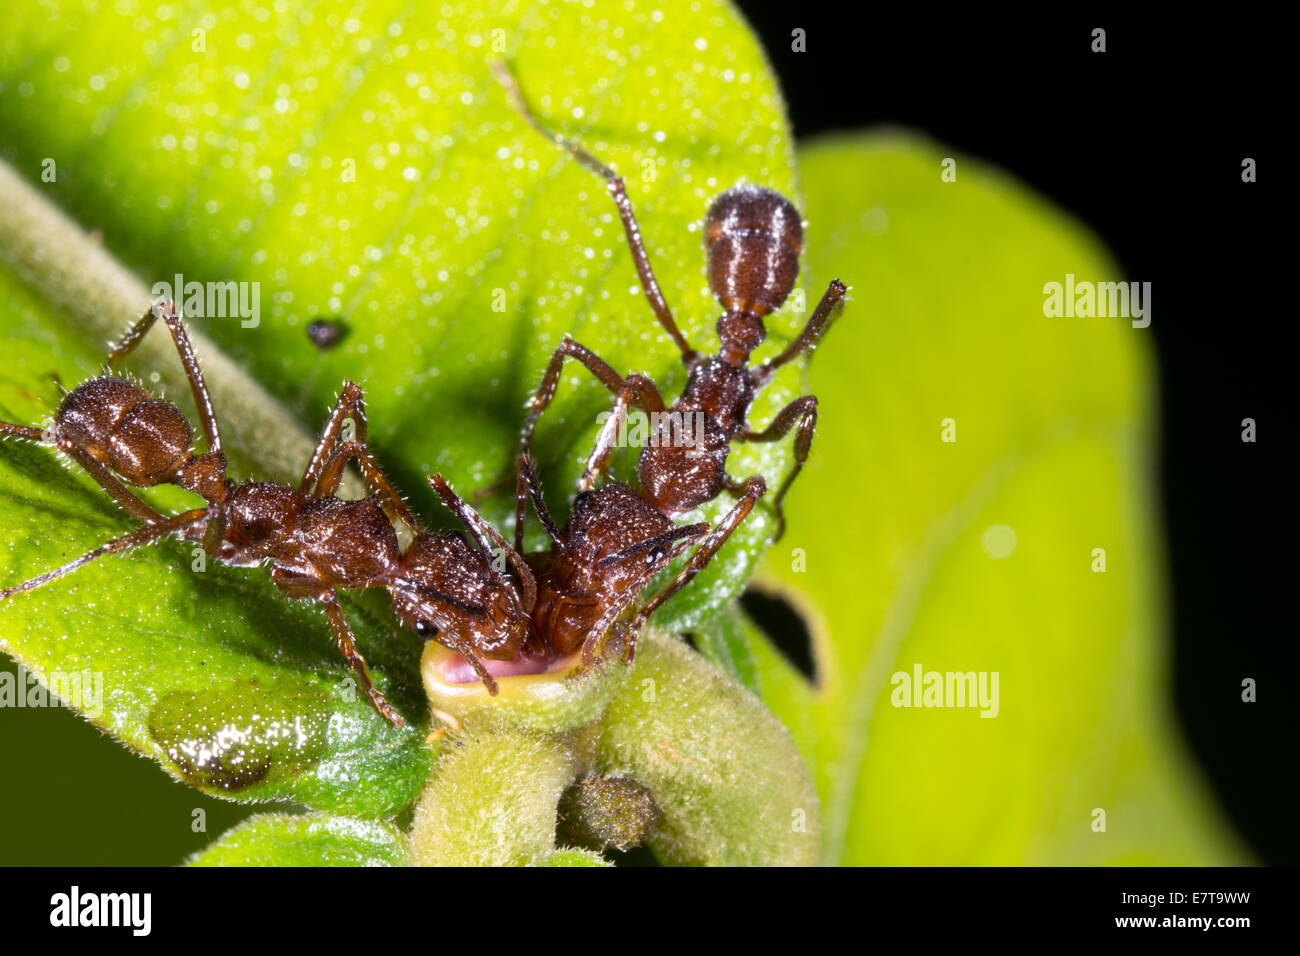 Las hormigas, recogiendo el néctar de las flores de un extra-nectarios florales de un arbusto de sotobosque en la selva, Ecuador. Foto de stock